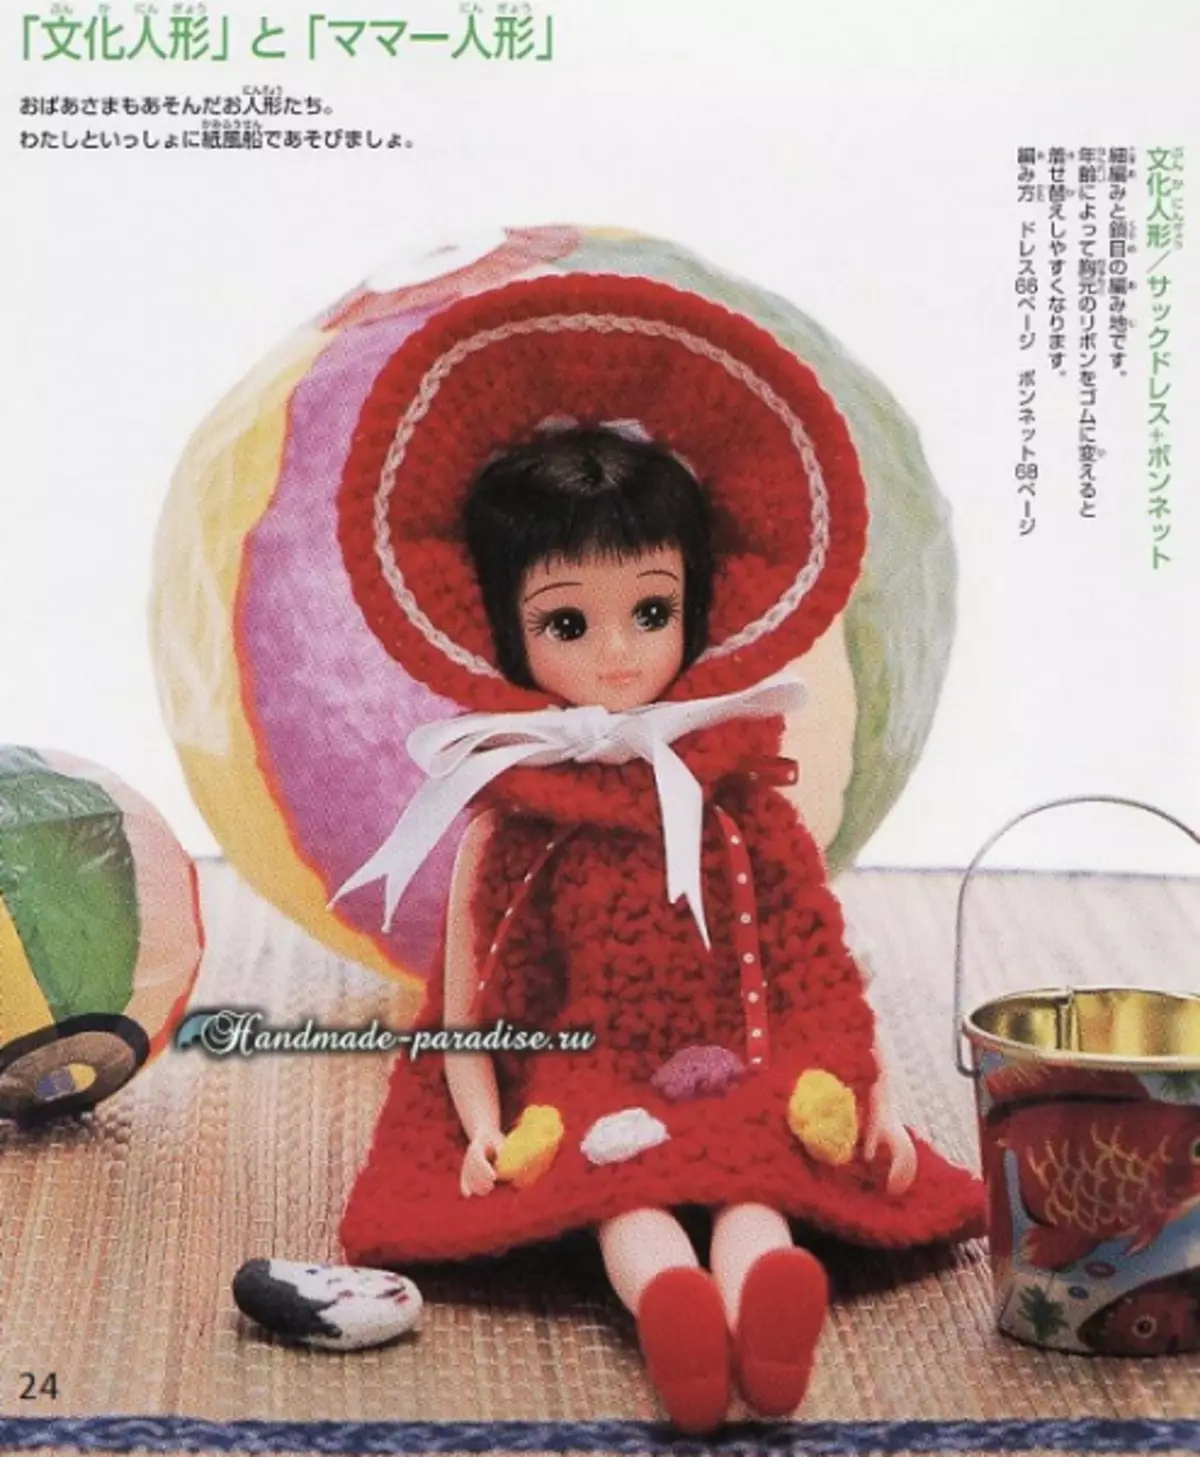 Neulotut vaatteet nuket. Magazine, jossa on järjestelmiä